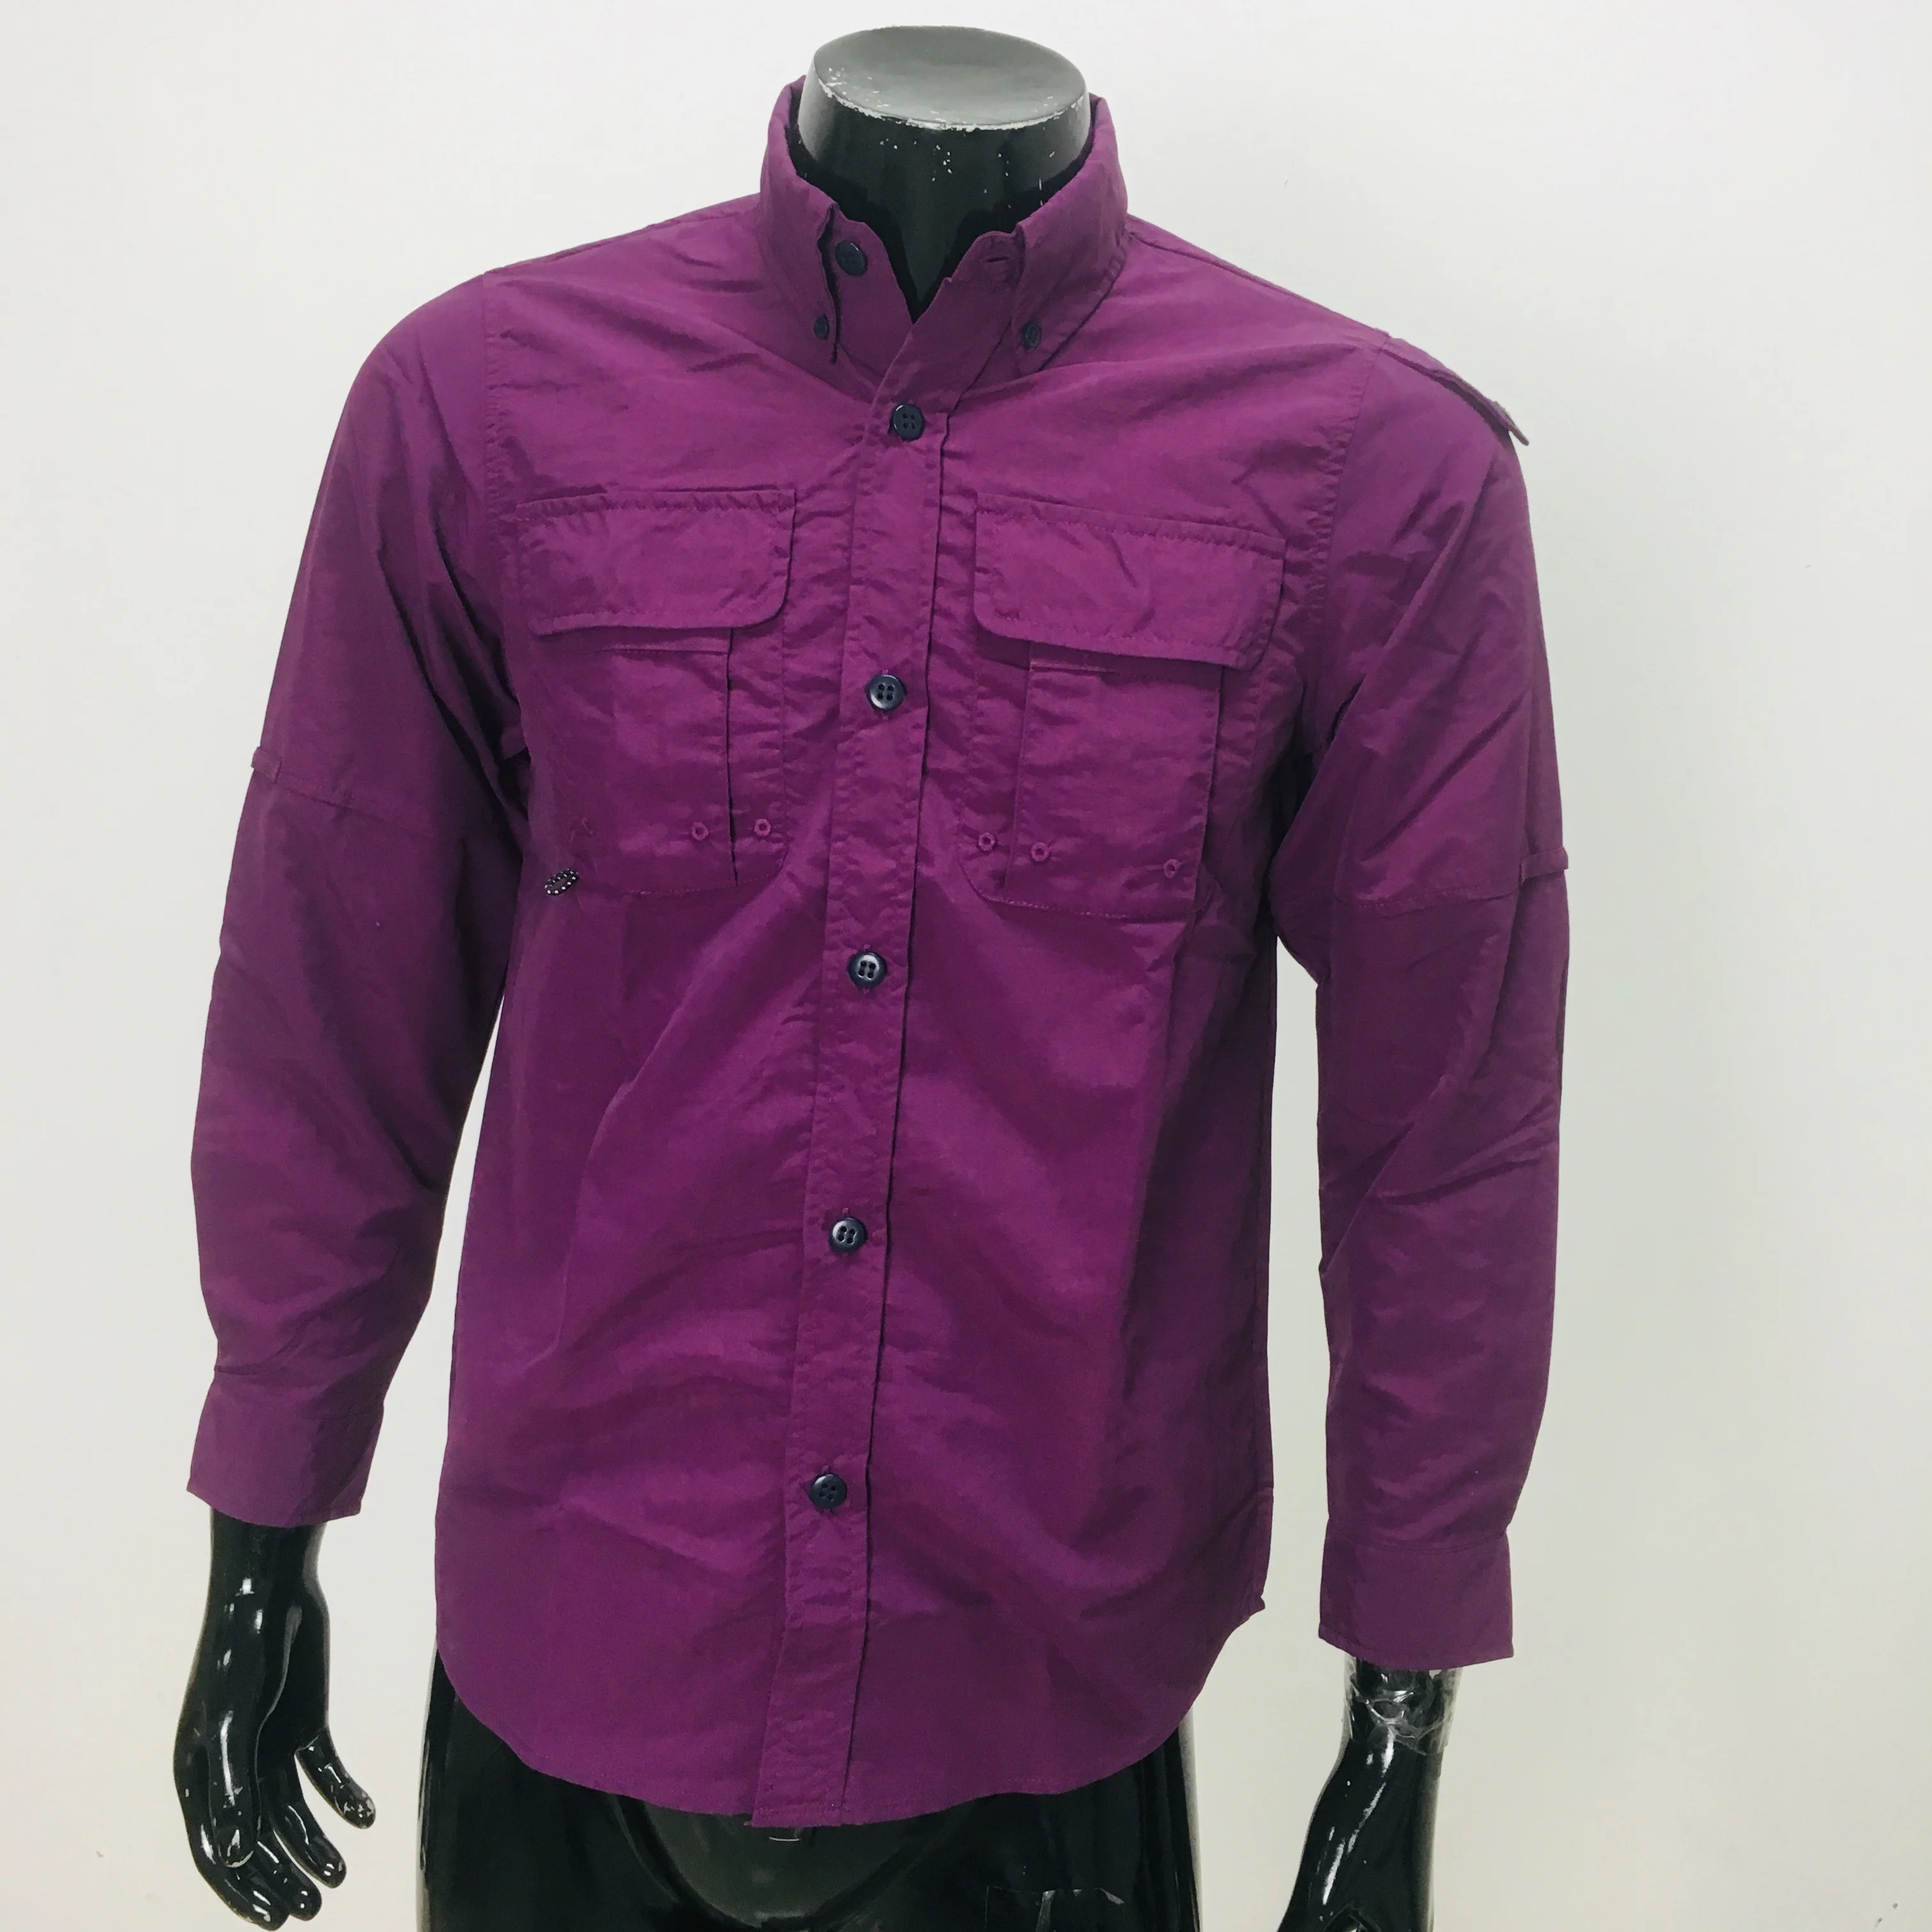 Purple Colour Shirt Deals, 50% OFF ...